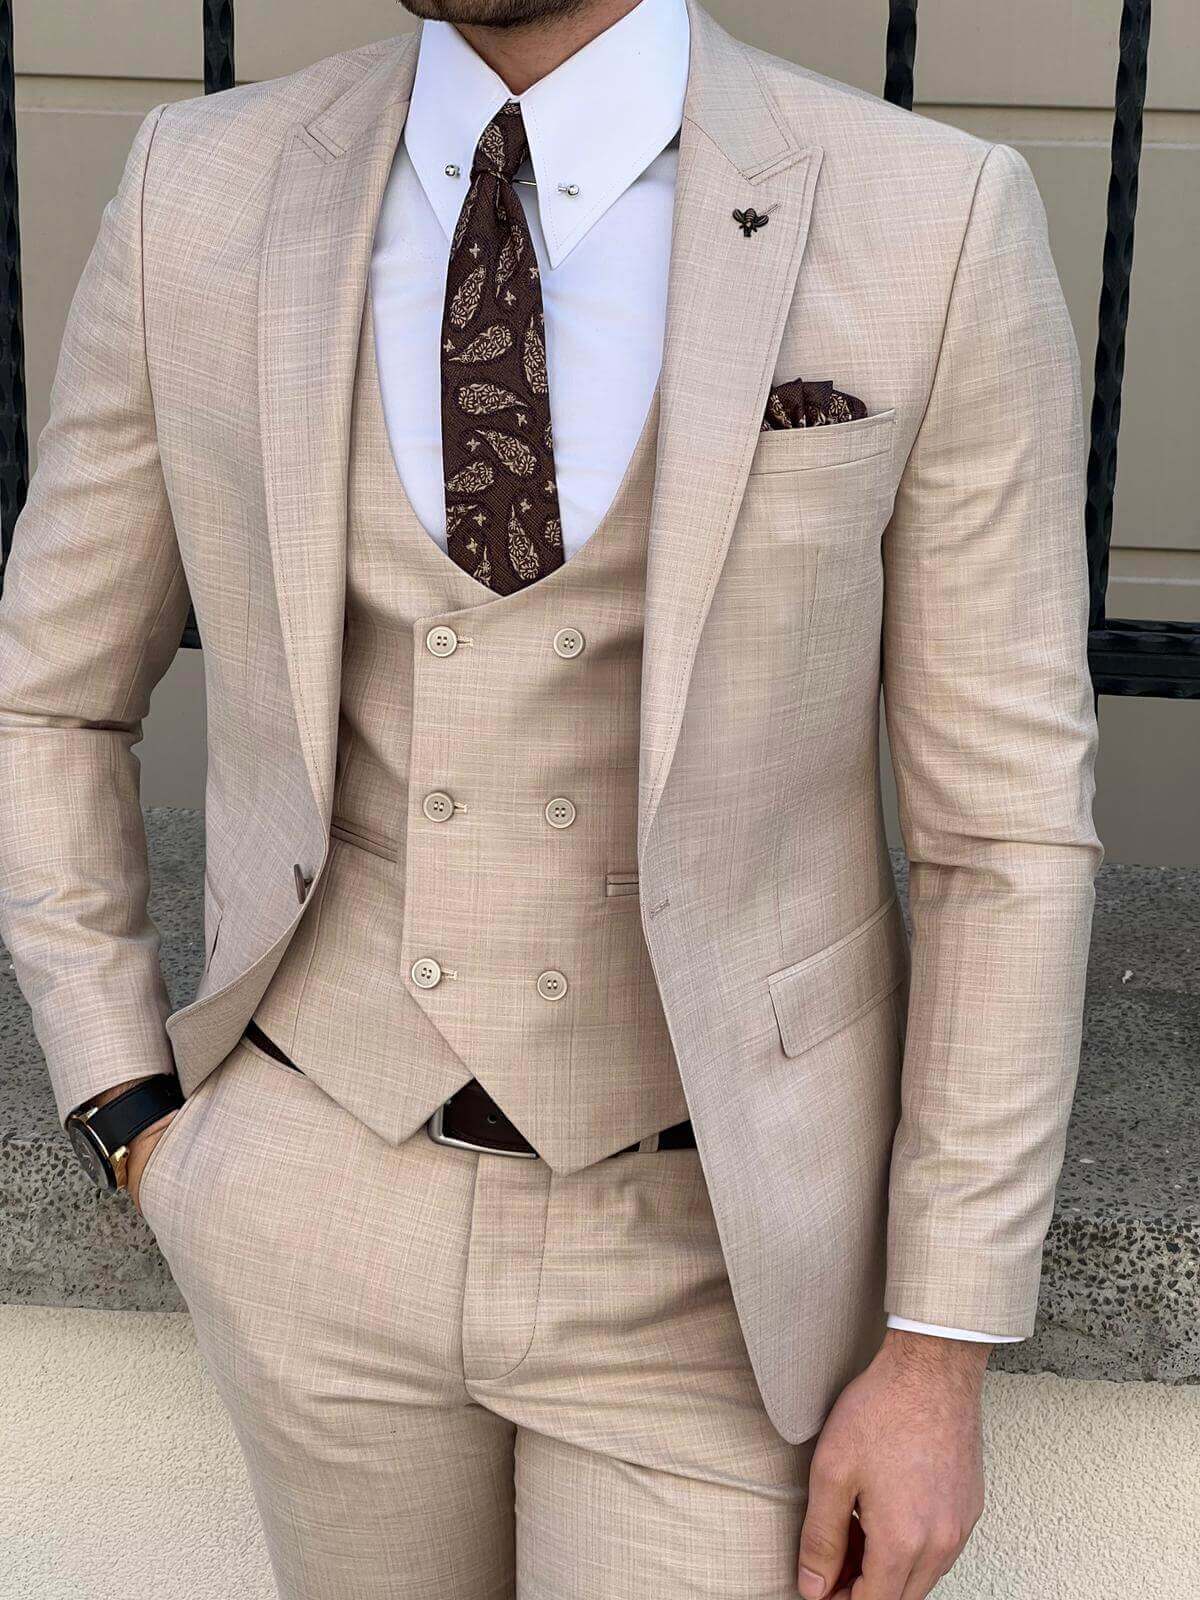 A model showcasing beige suit for men.